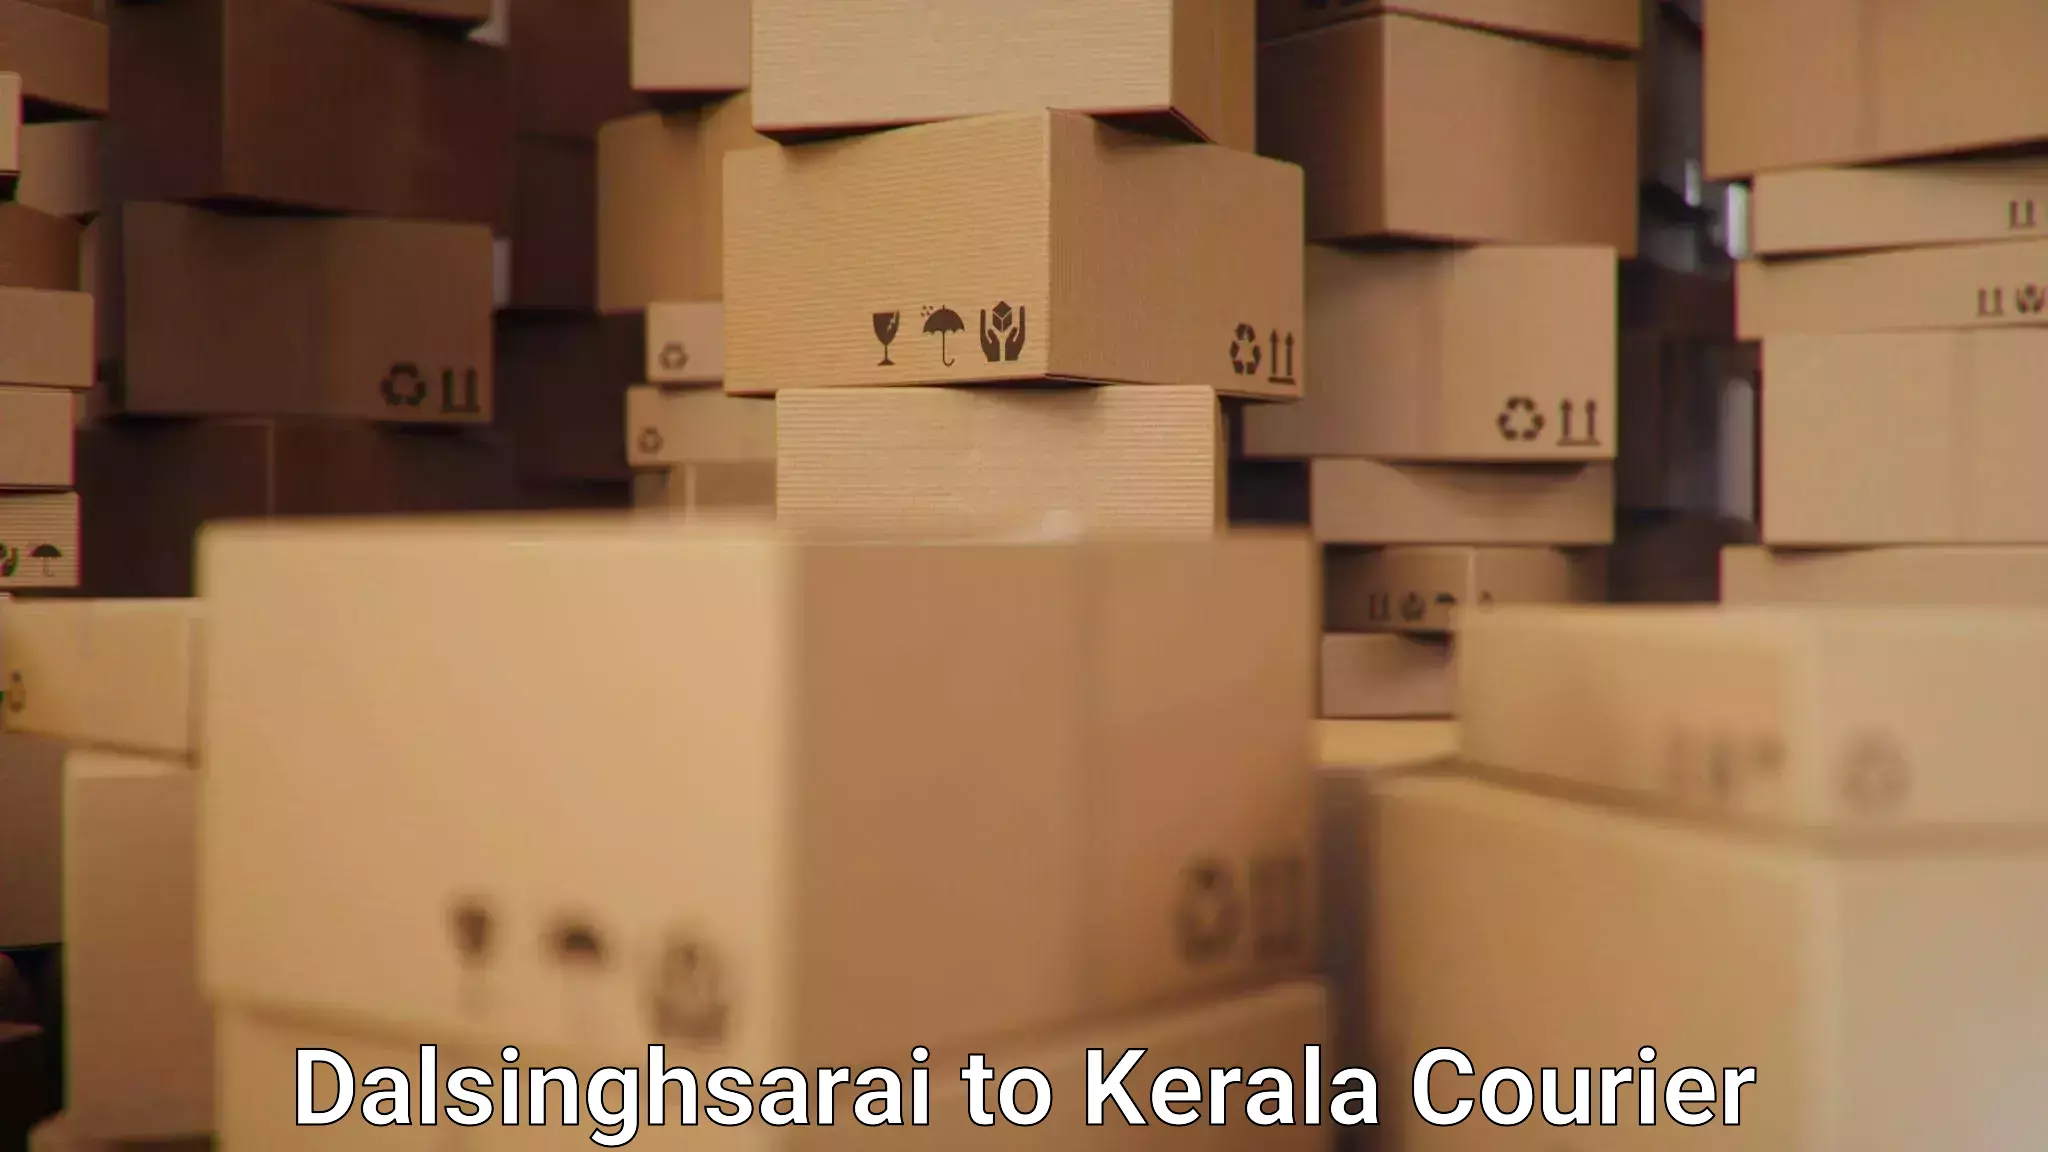 Smart shipping technology Dalsinghsarai to Irinjalakuda